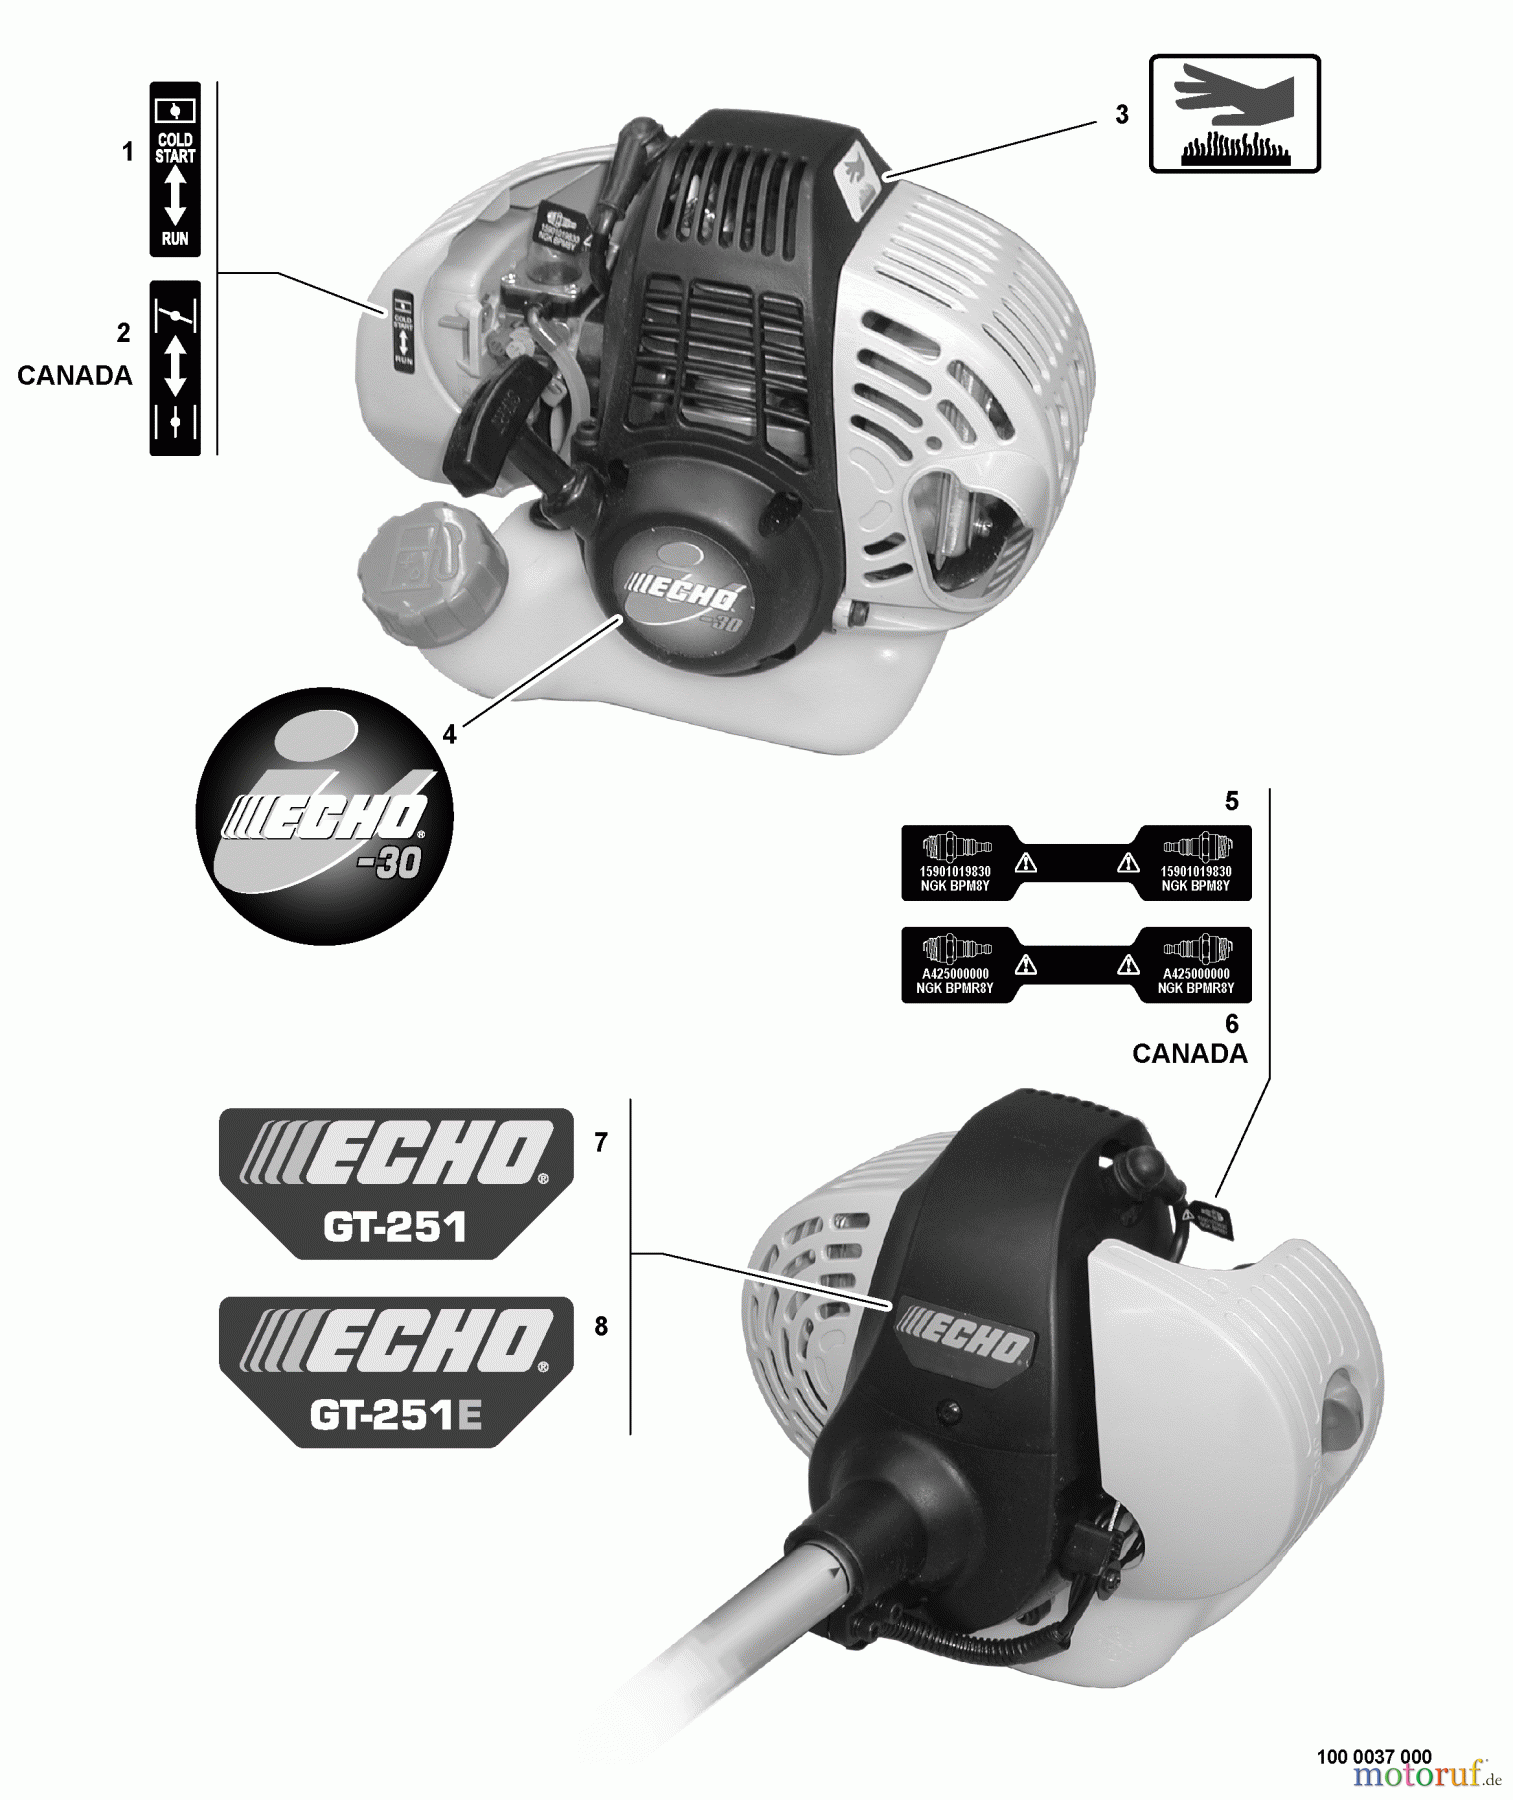  Echo Trimmer, Faden / Bürste GT-251E - Echo String Trimmer, S/N:10001001 - 10999999 Labels